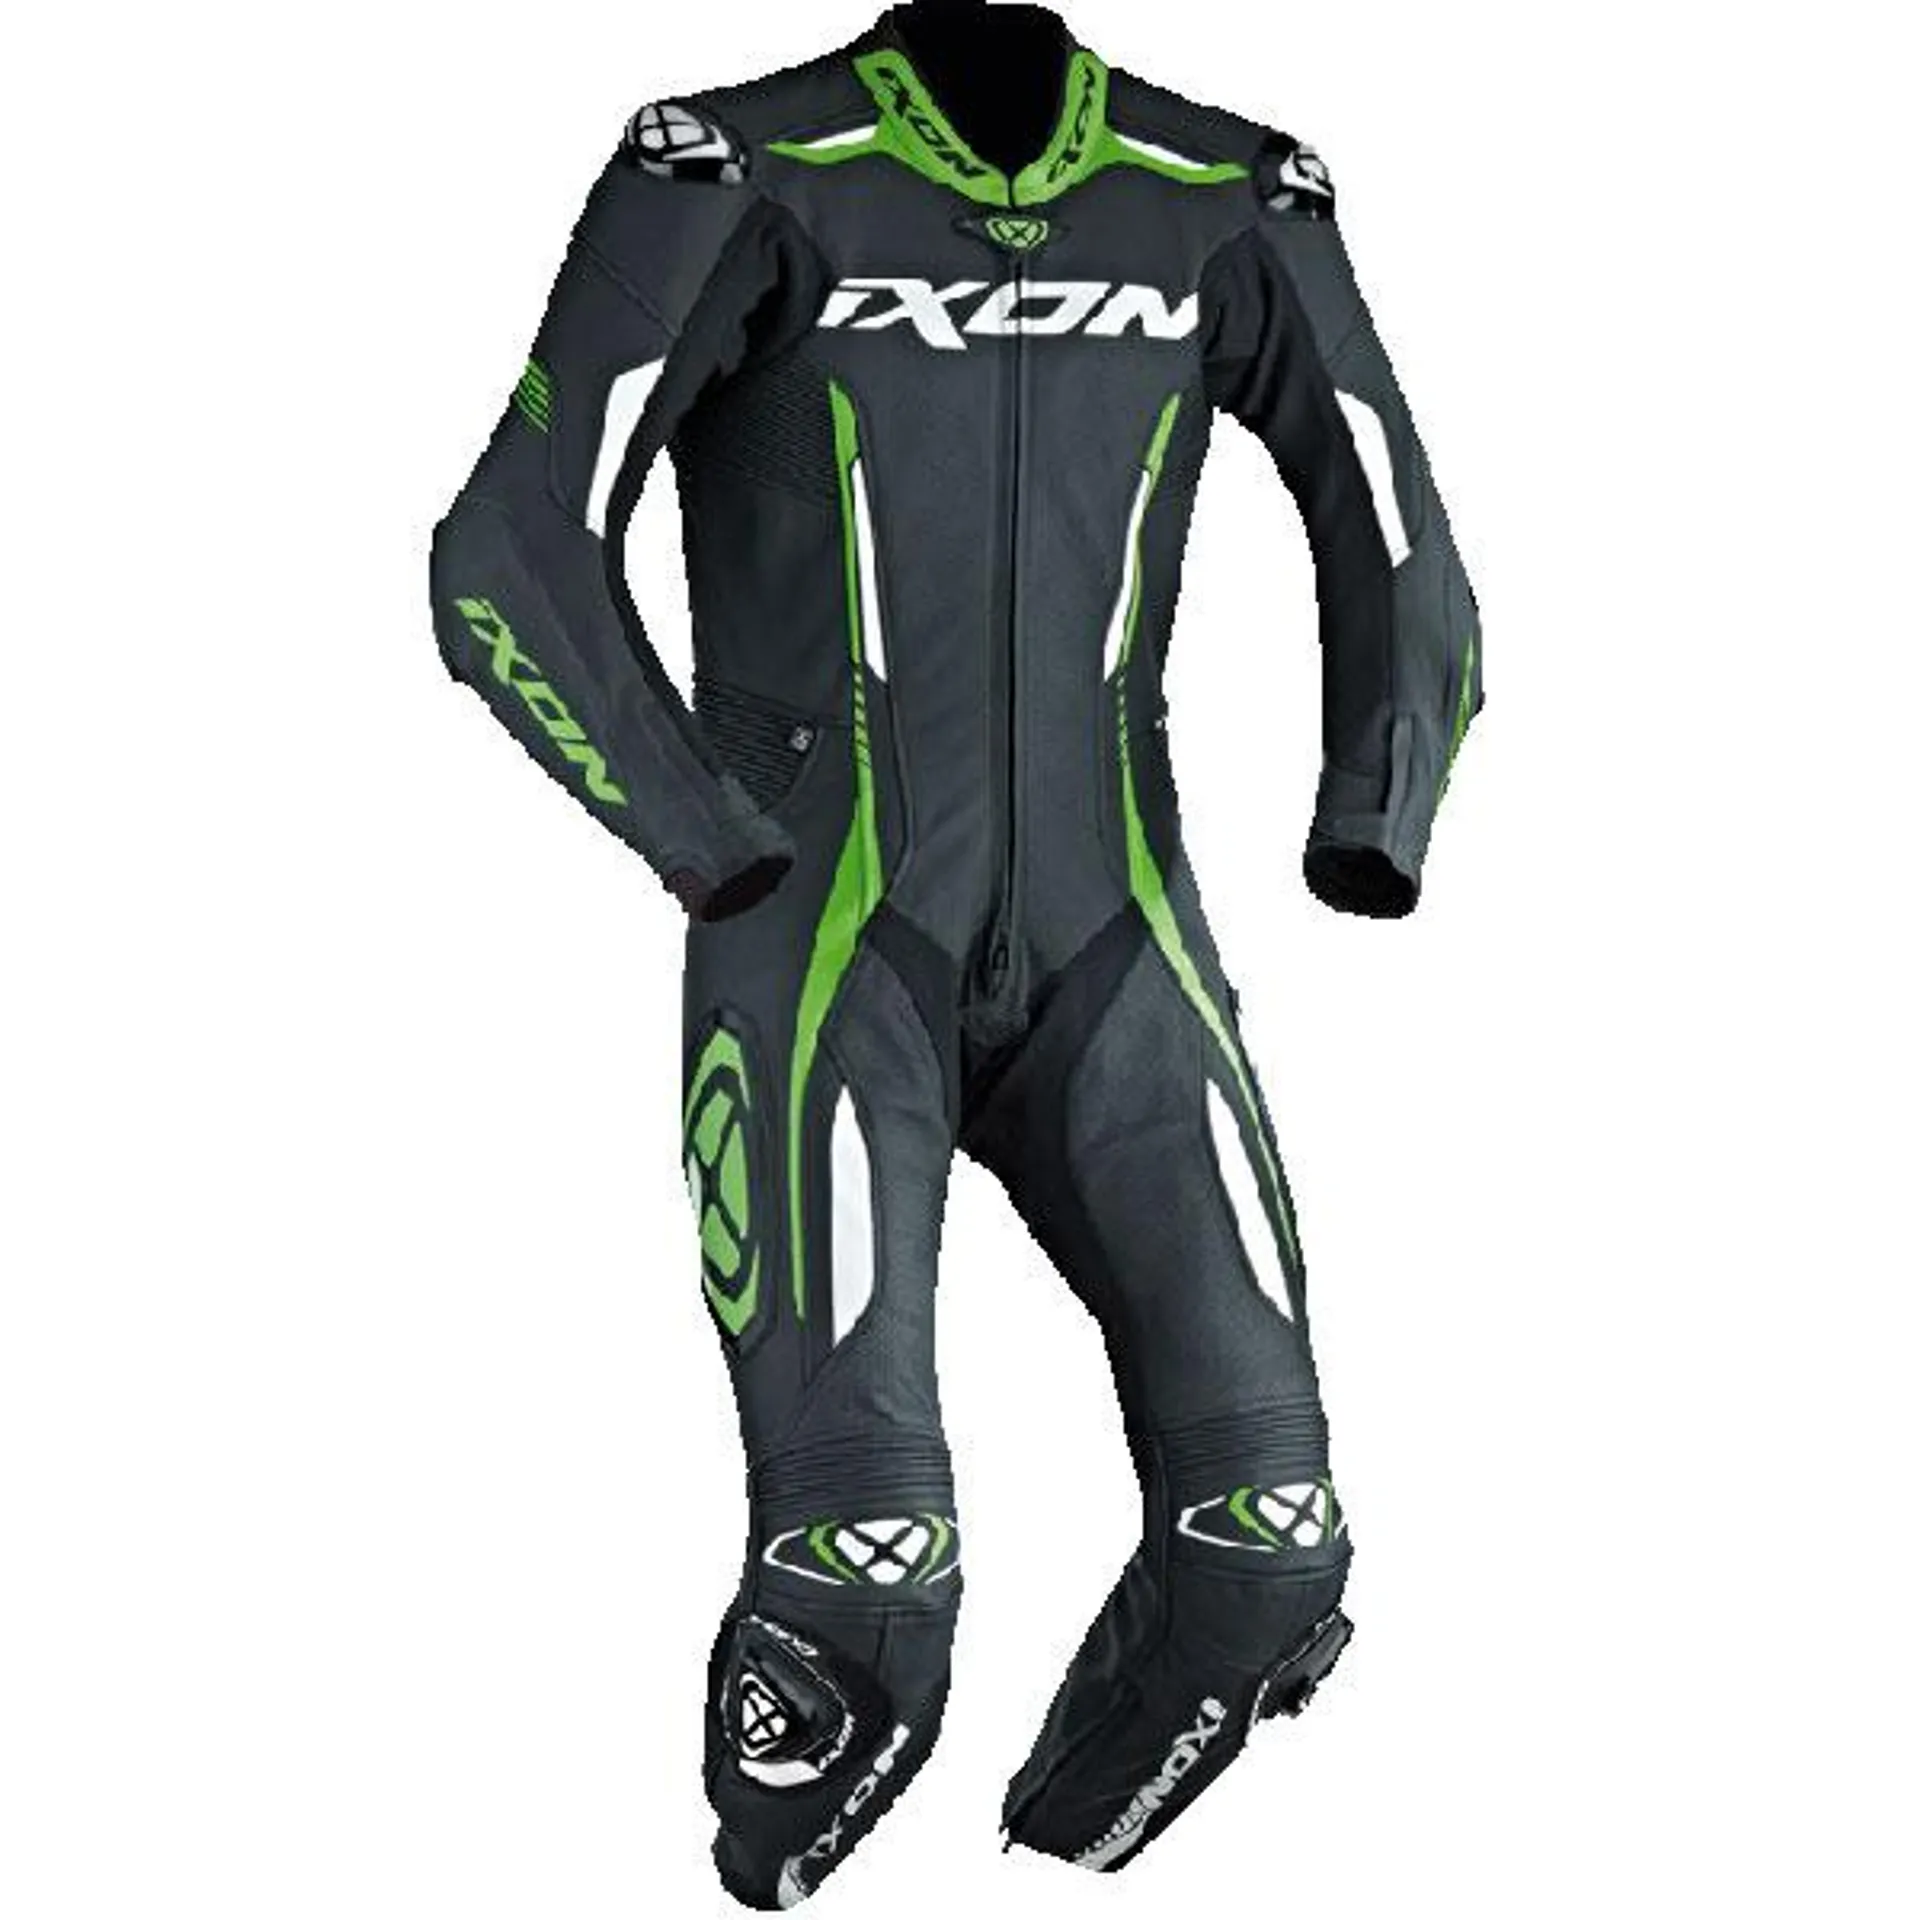 Ixon Vortex 2 1 Piece Suit - Black / White / Green